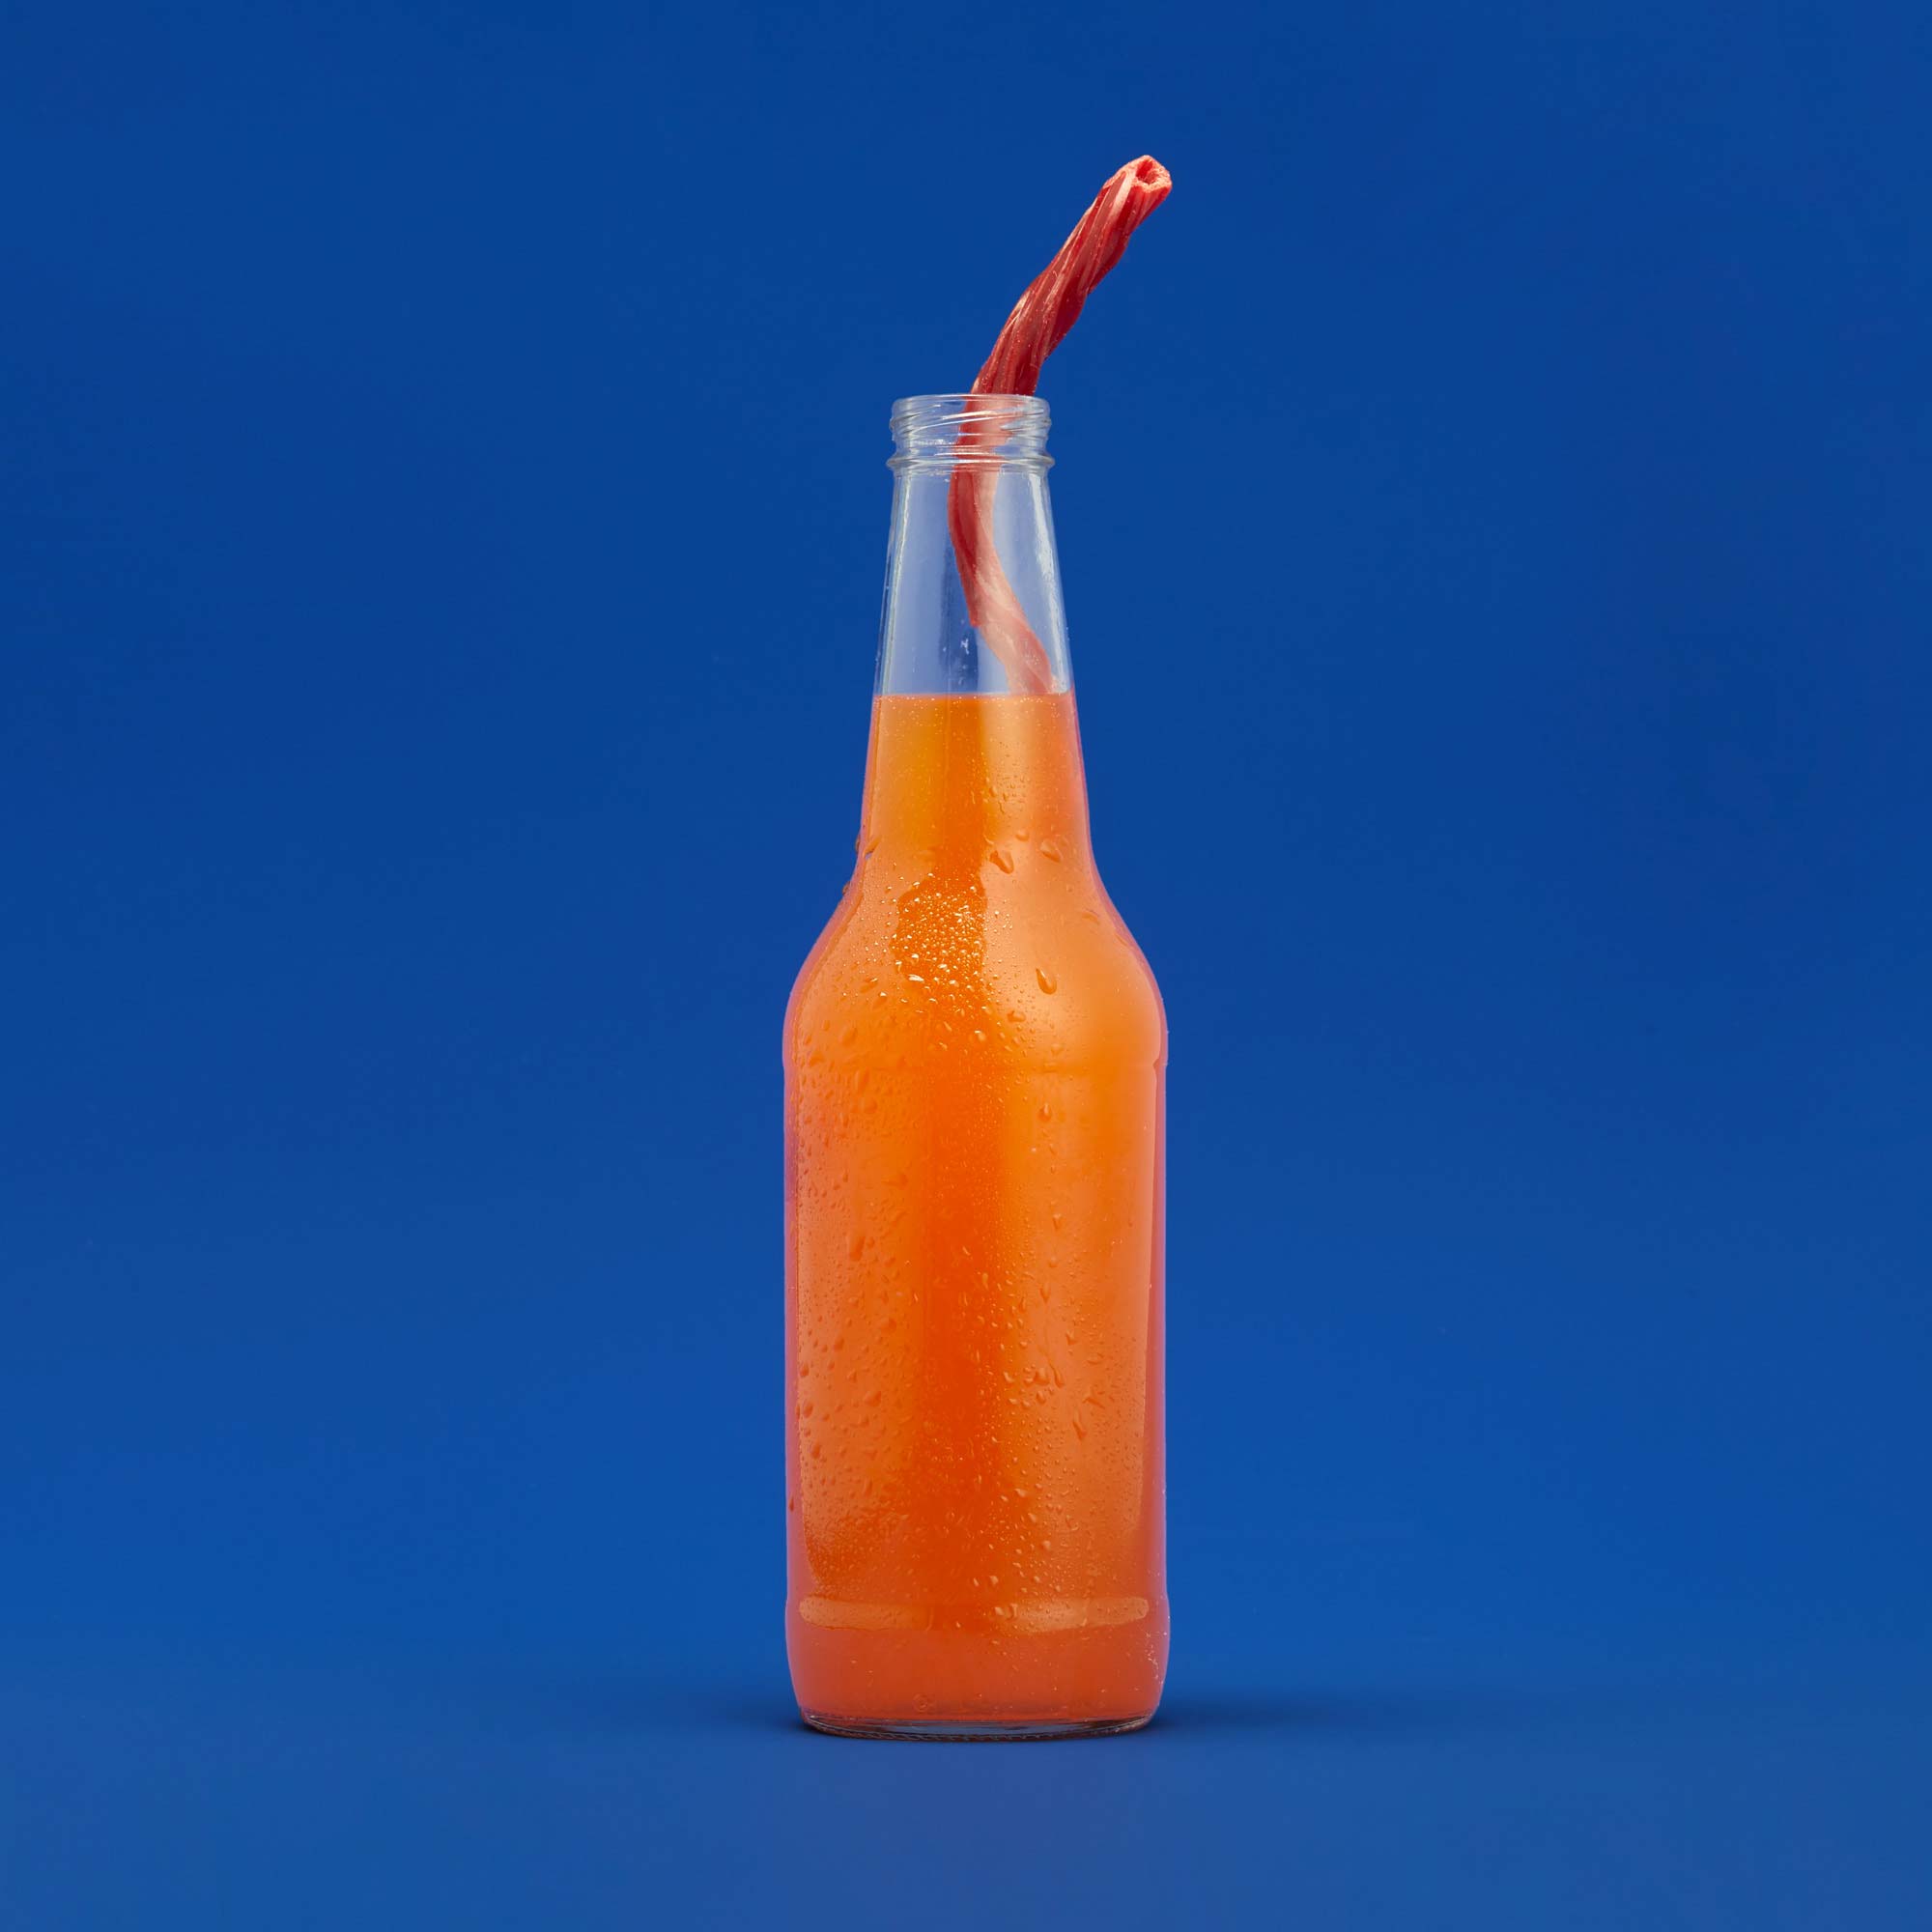 Twizzler Straw in a bottle of orange soda